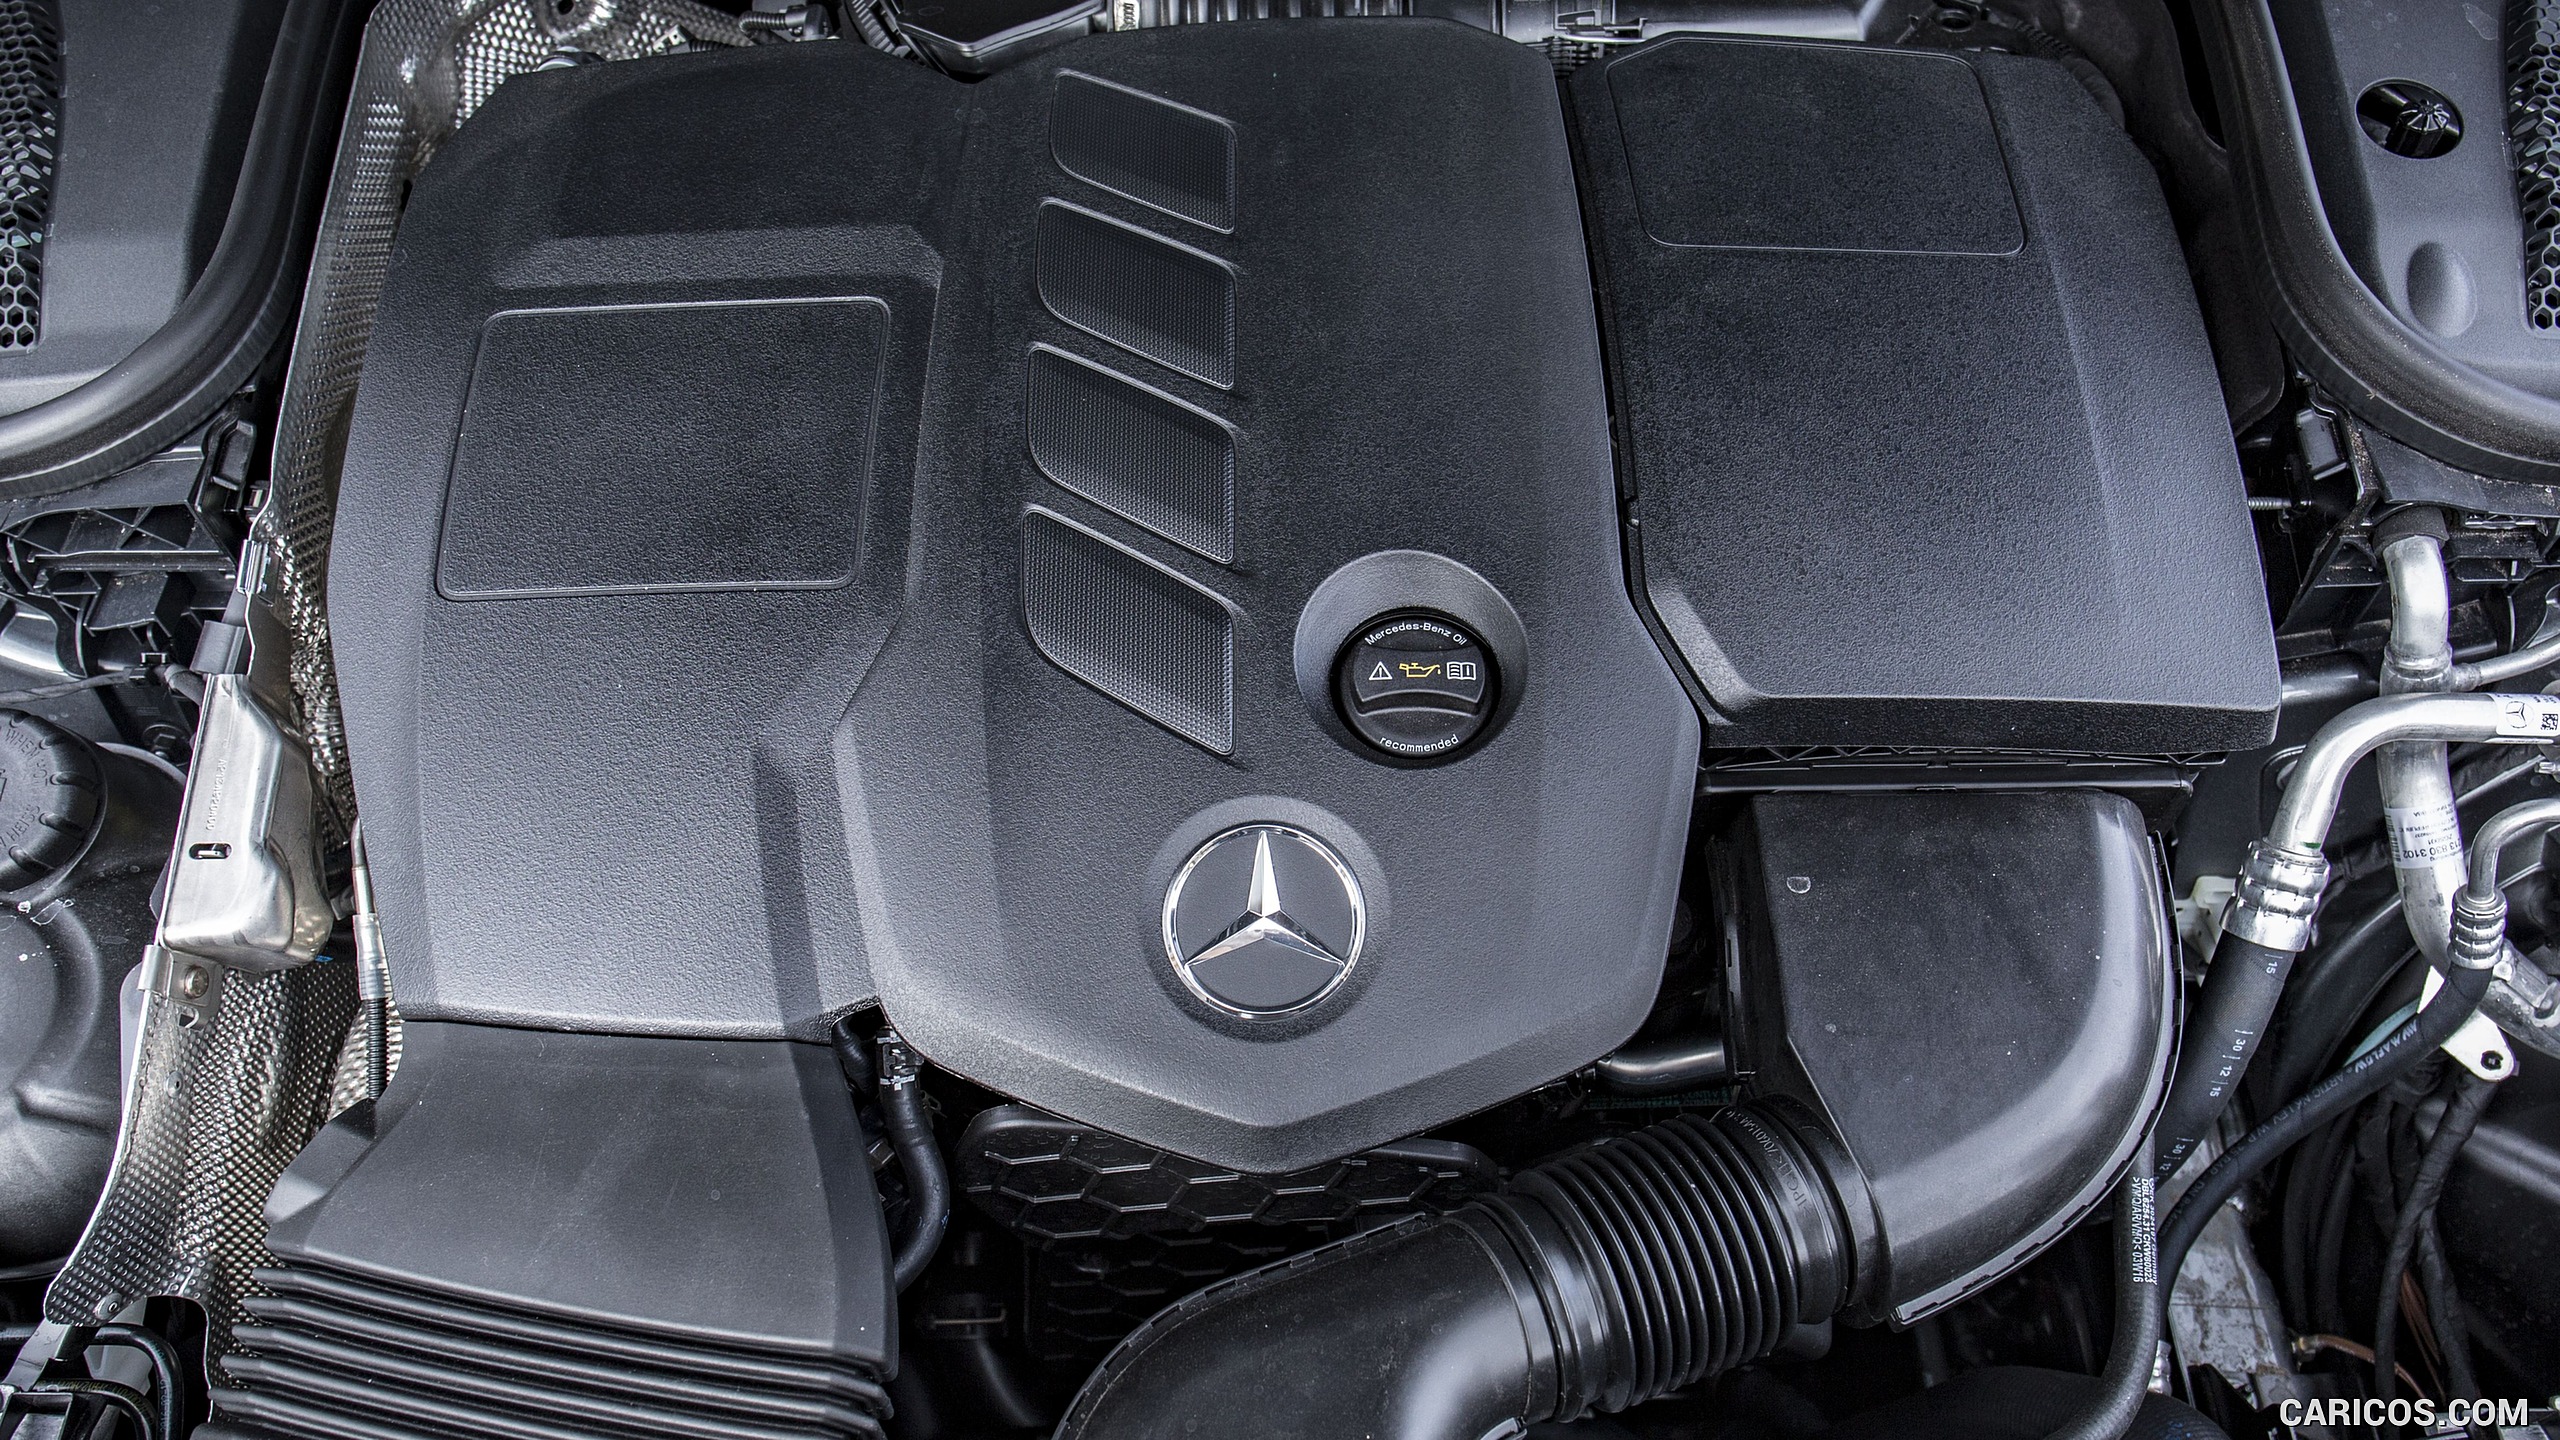 2017 Mercedes-Benz E-Class E220d Diesel (UK-Spec) - Engine, #95 of 106